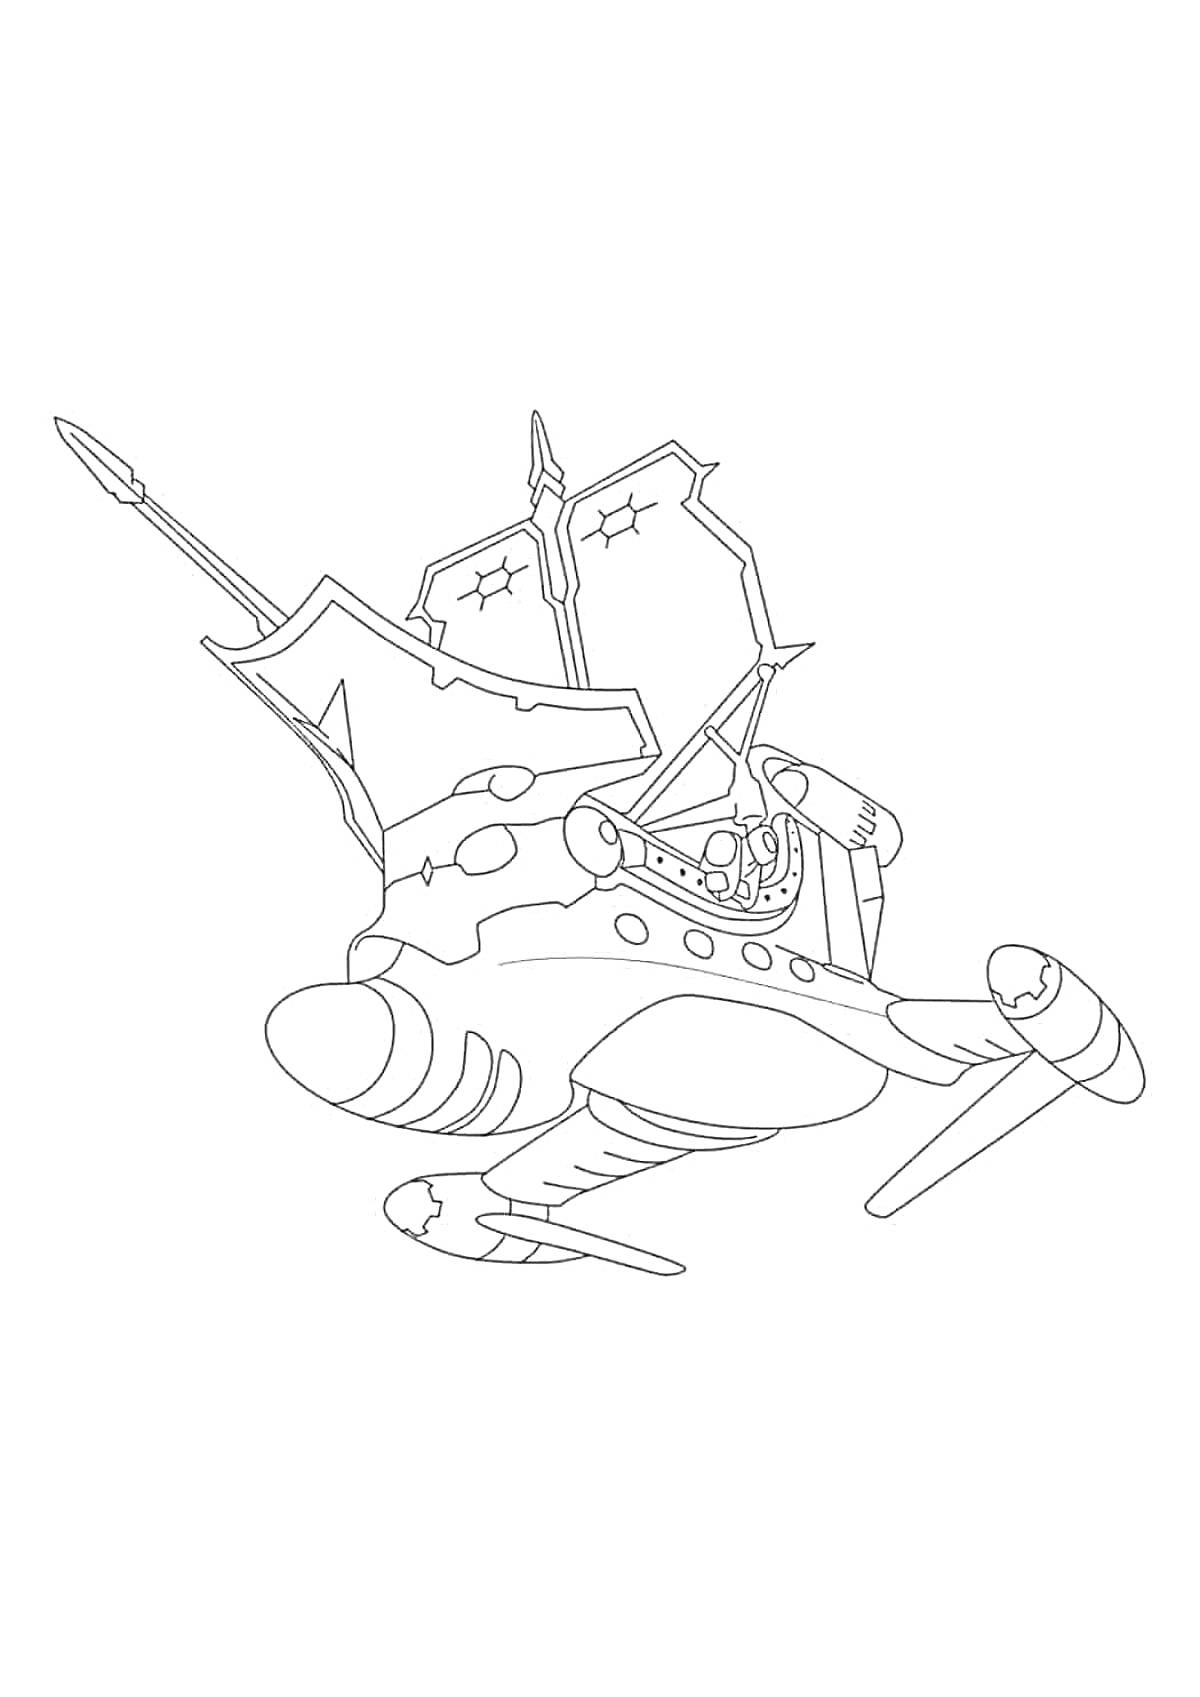 Раскраска Самолет с пушками и крыльями в форме паруса